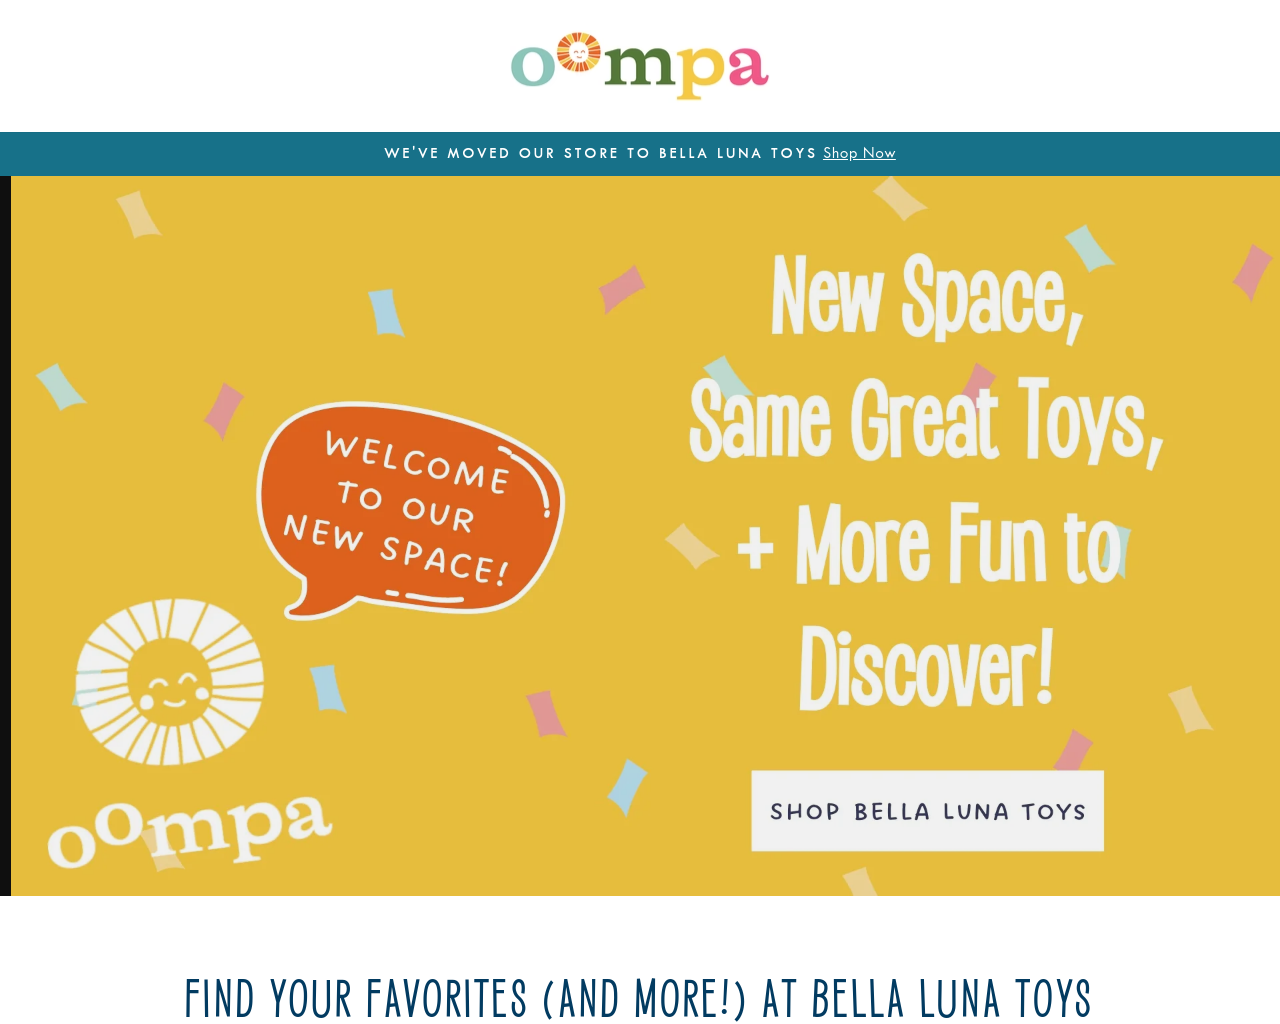 oompa.com